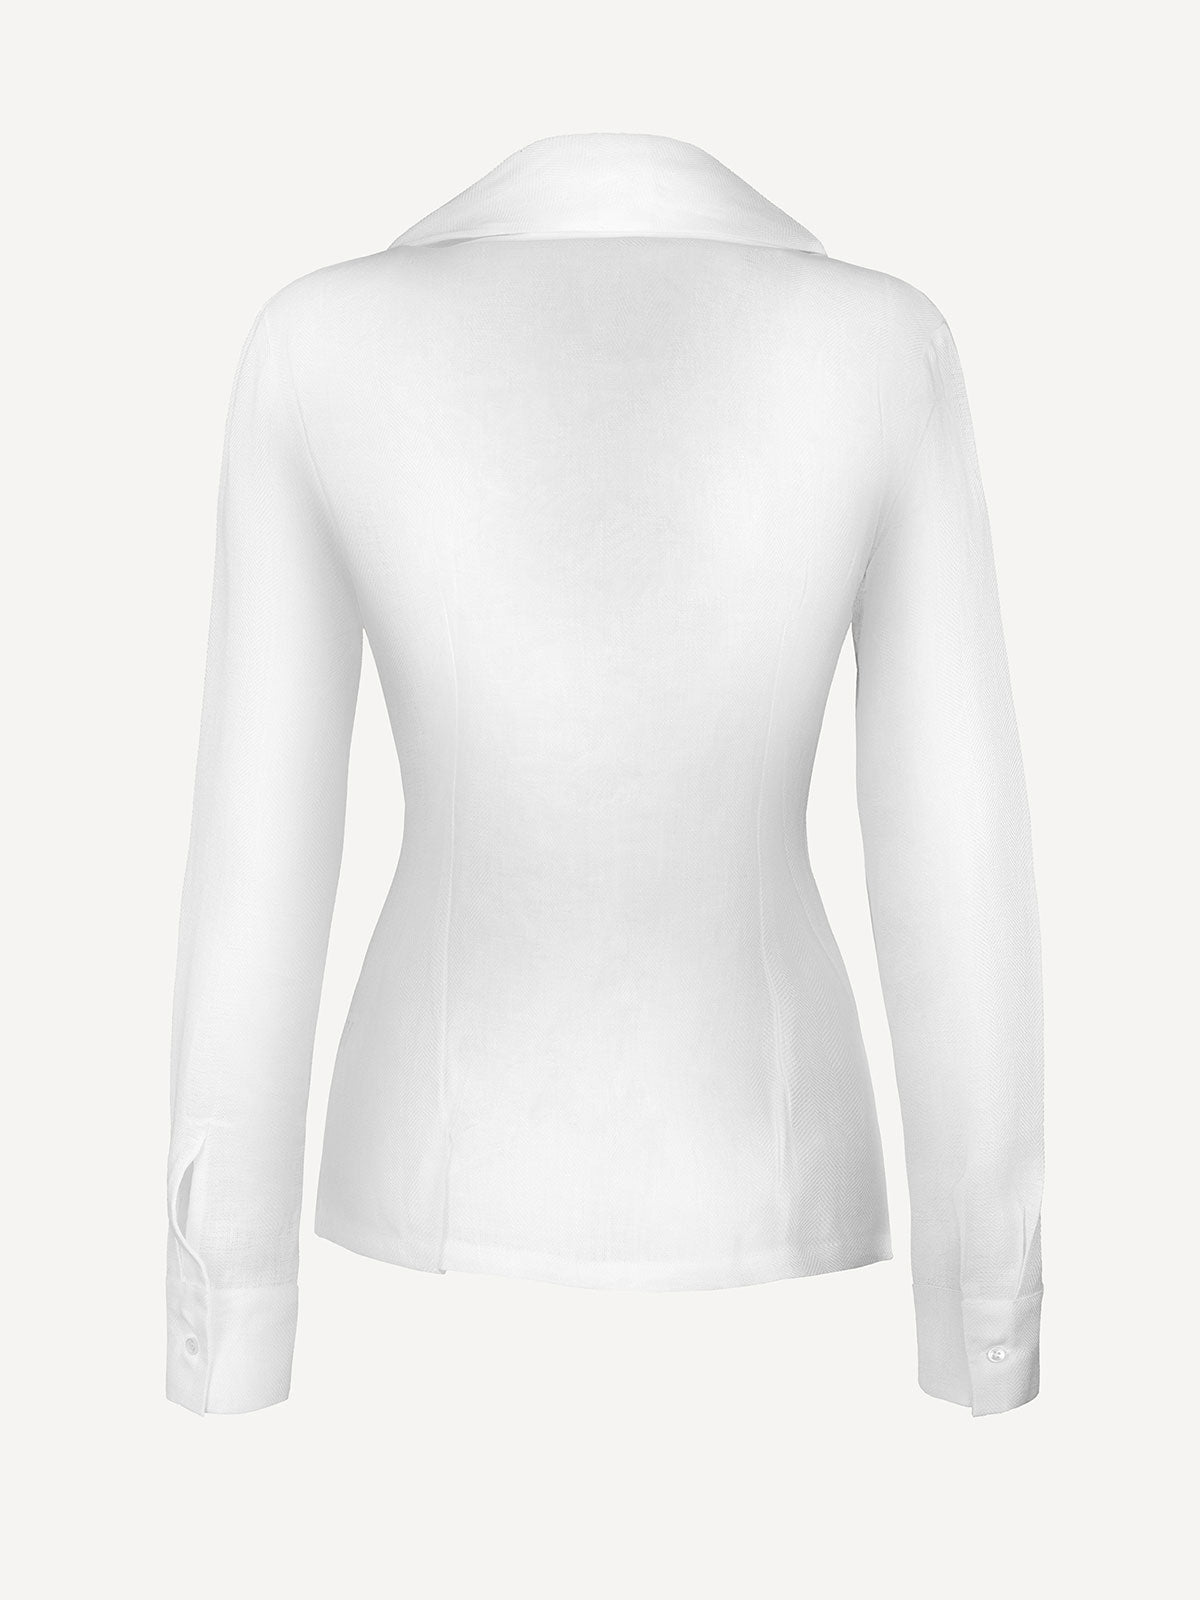 Camicia fiocco white back 100% Capri